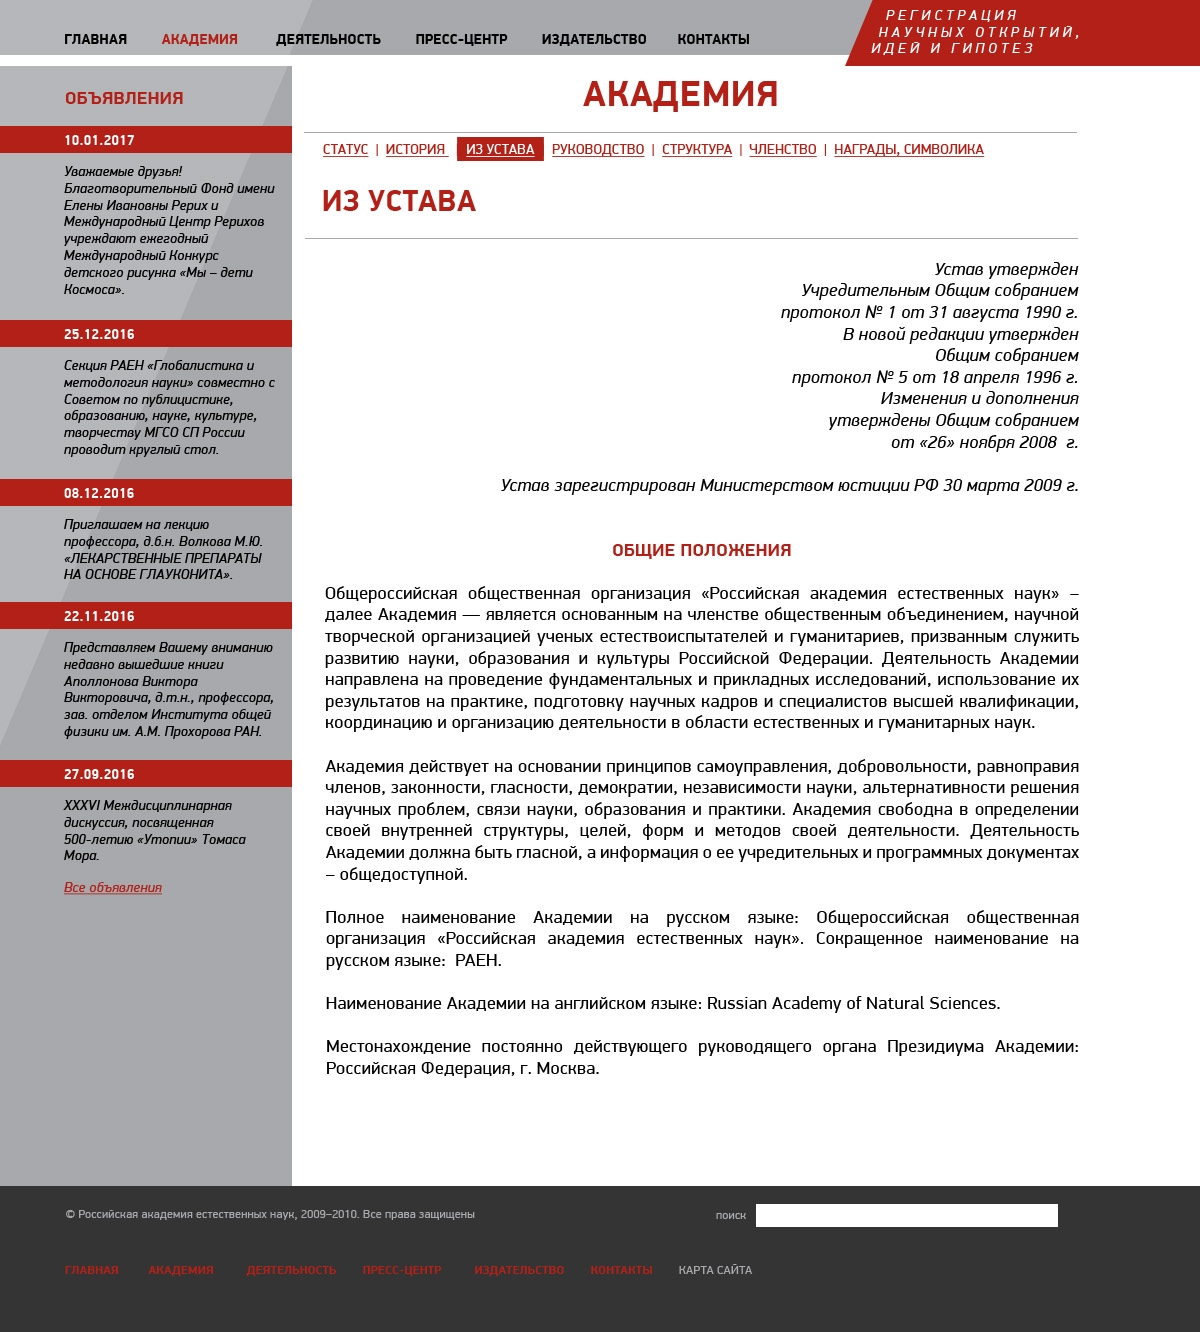 Макет страницы устава сайта Российской академии естественных наук